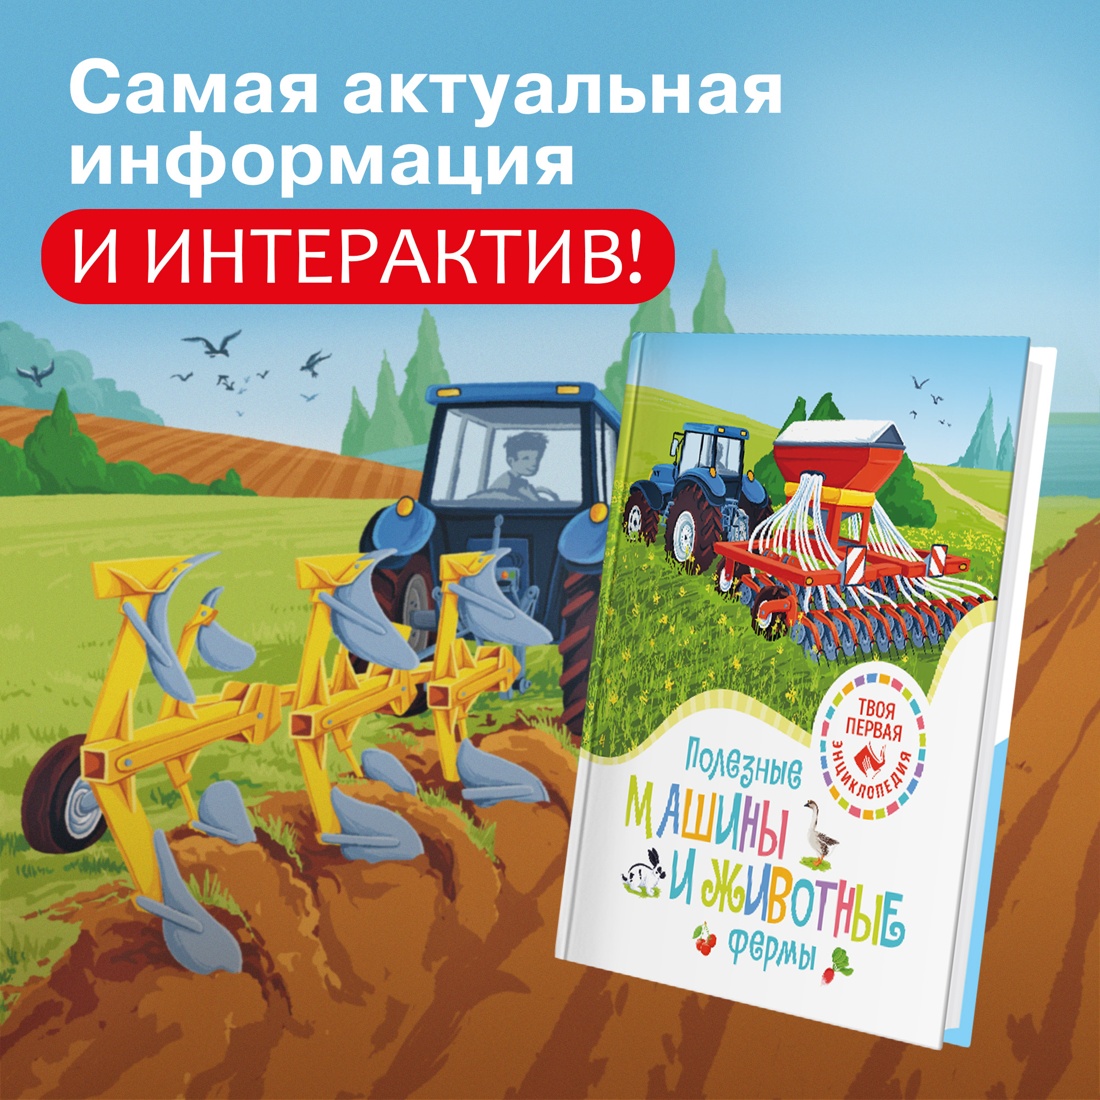 Промо материал к книге "Полезные машины и животные фермы" №0